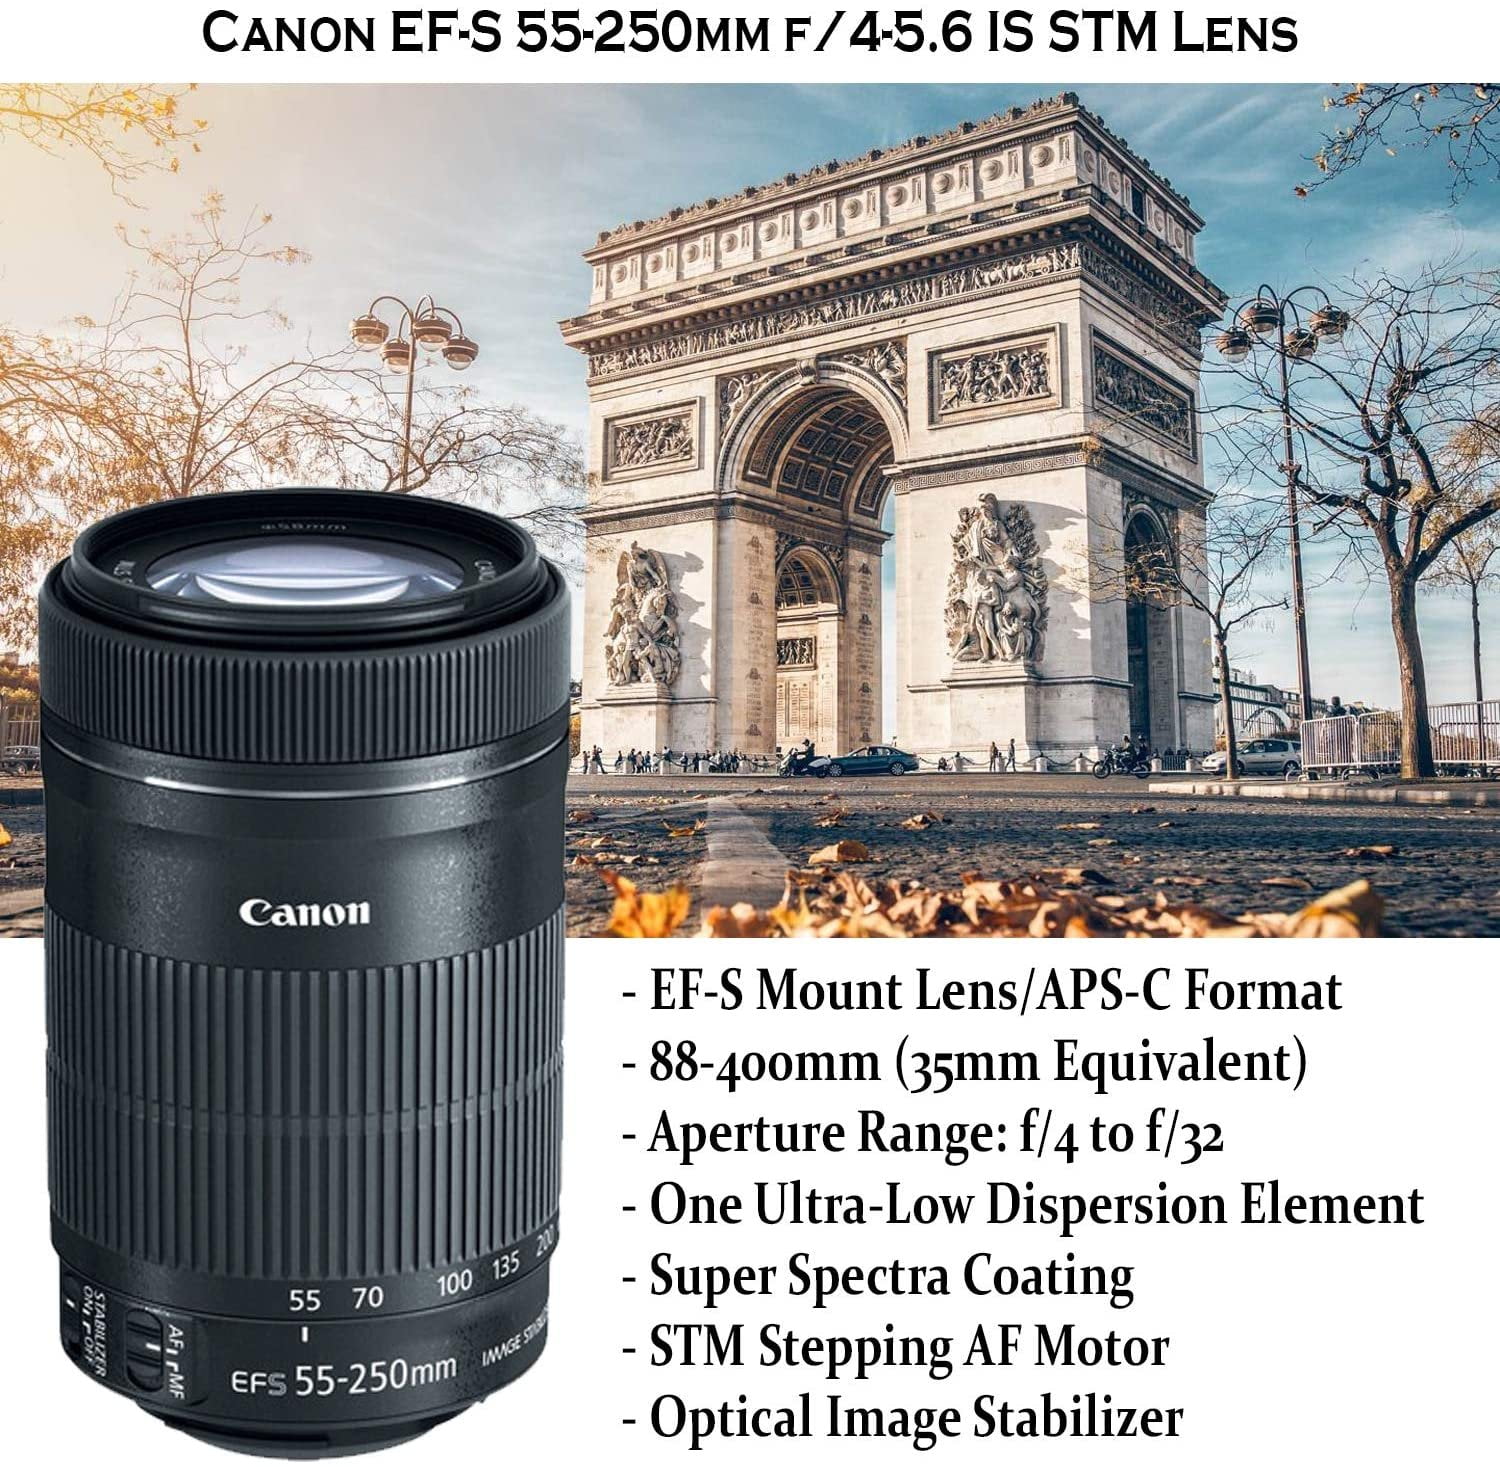 Canon EOS Rebel SL3 DSLR Camera with 18-55mm STM Lens Bundle +